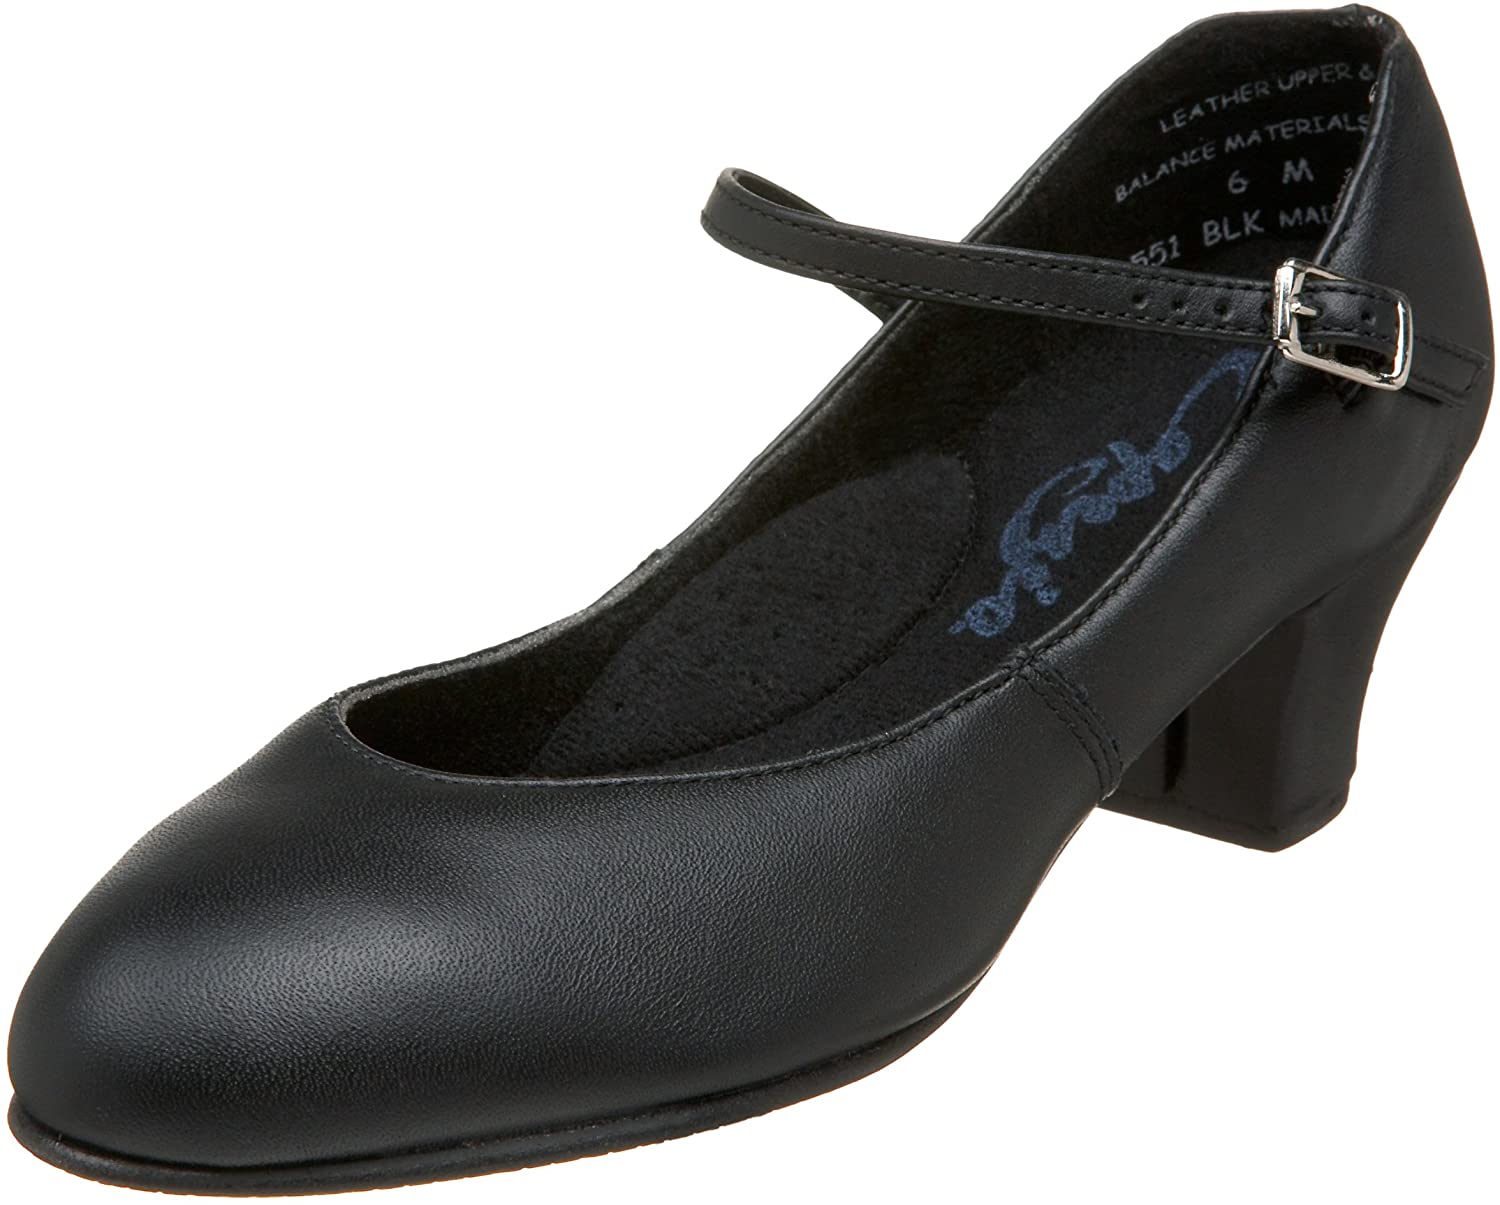 Capezio Women's Jr. Footlight Character Shoe 1.5 Heel #551 – The Costume  Party & Dance Shop LLP